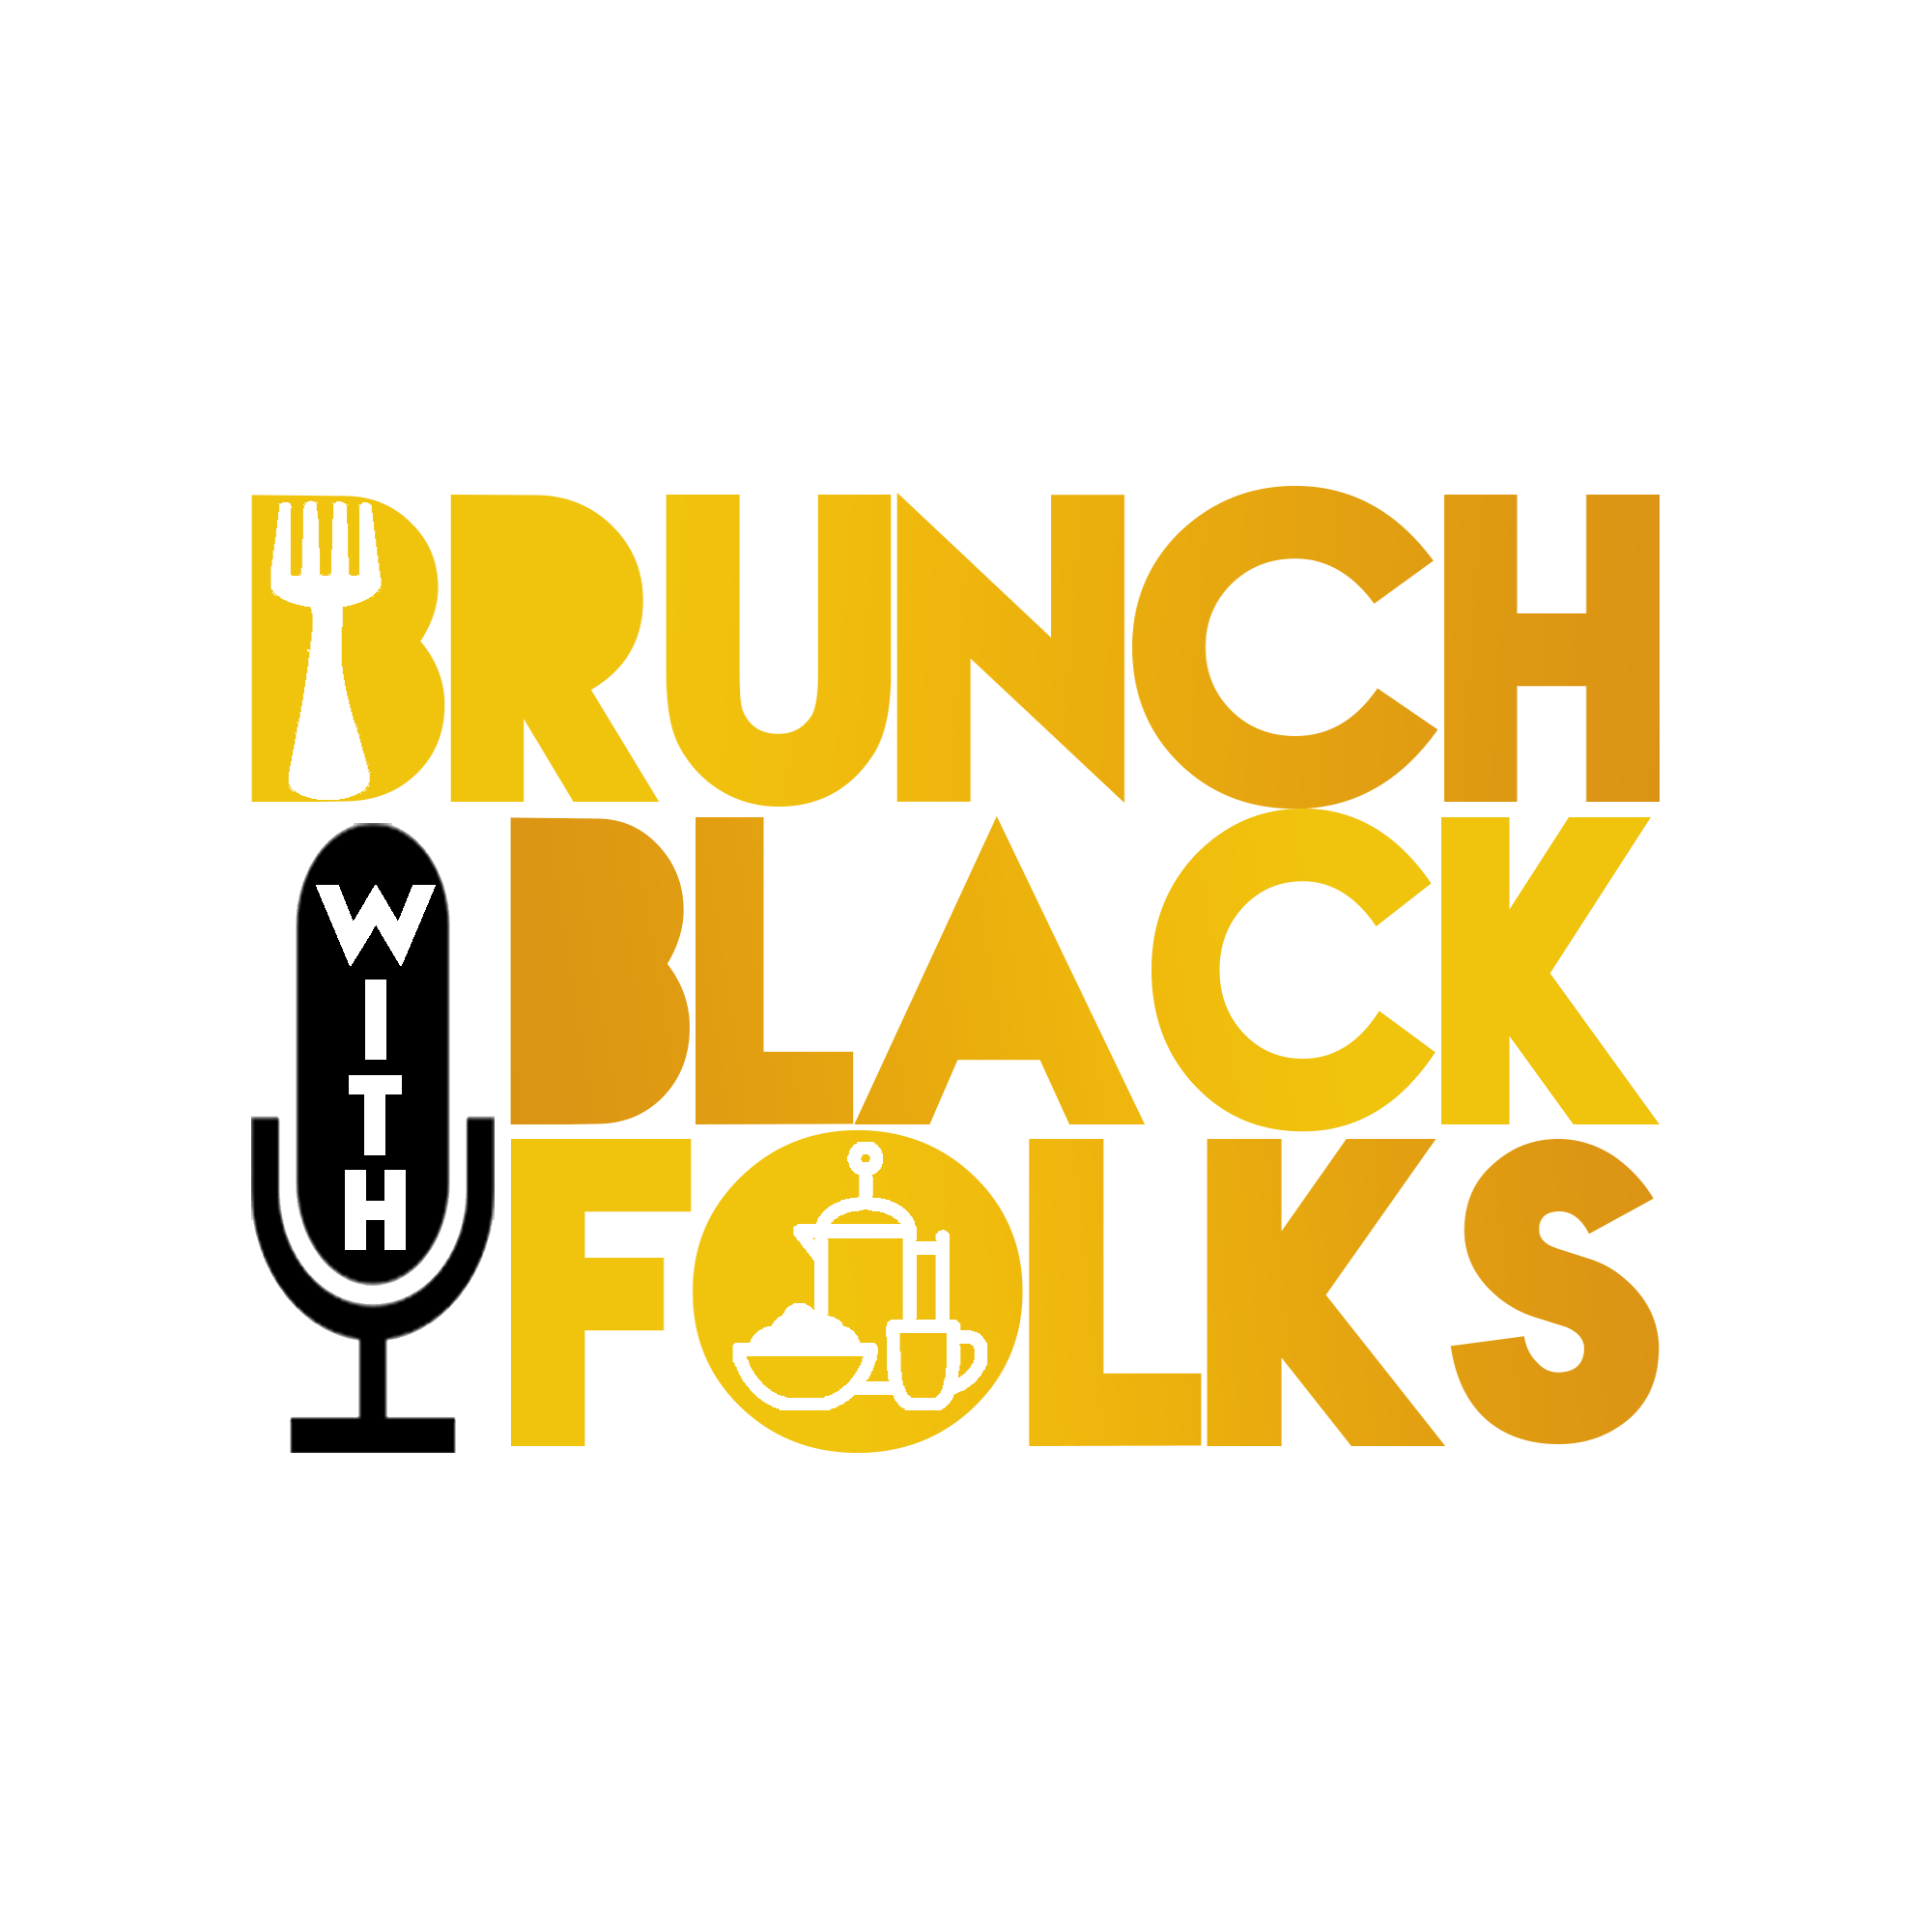 Brunch Logo - Brunch with Black Folks